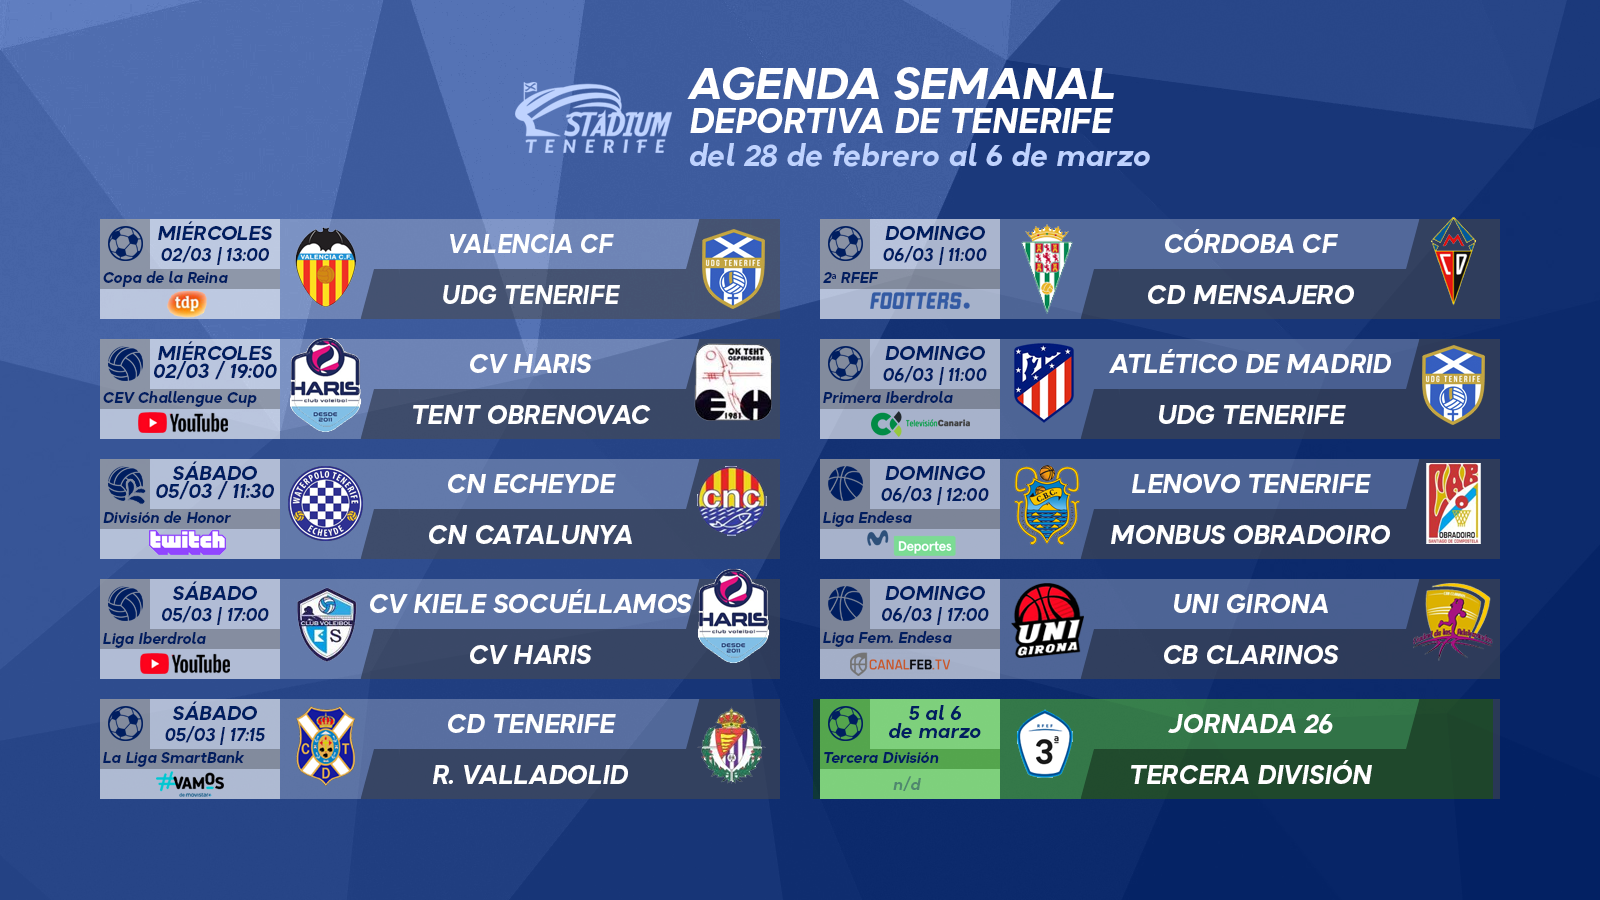 Agenda Semanal Deportiva de Tenerife (28 de febrero al 6 de marzo)